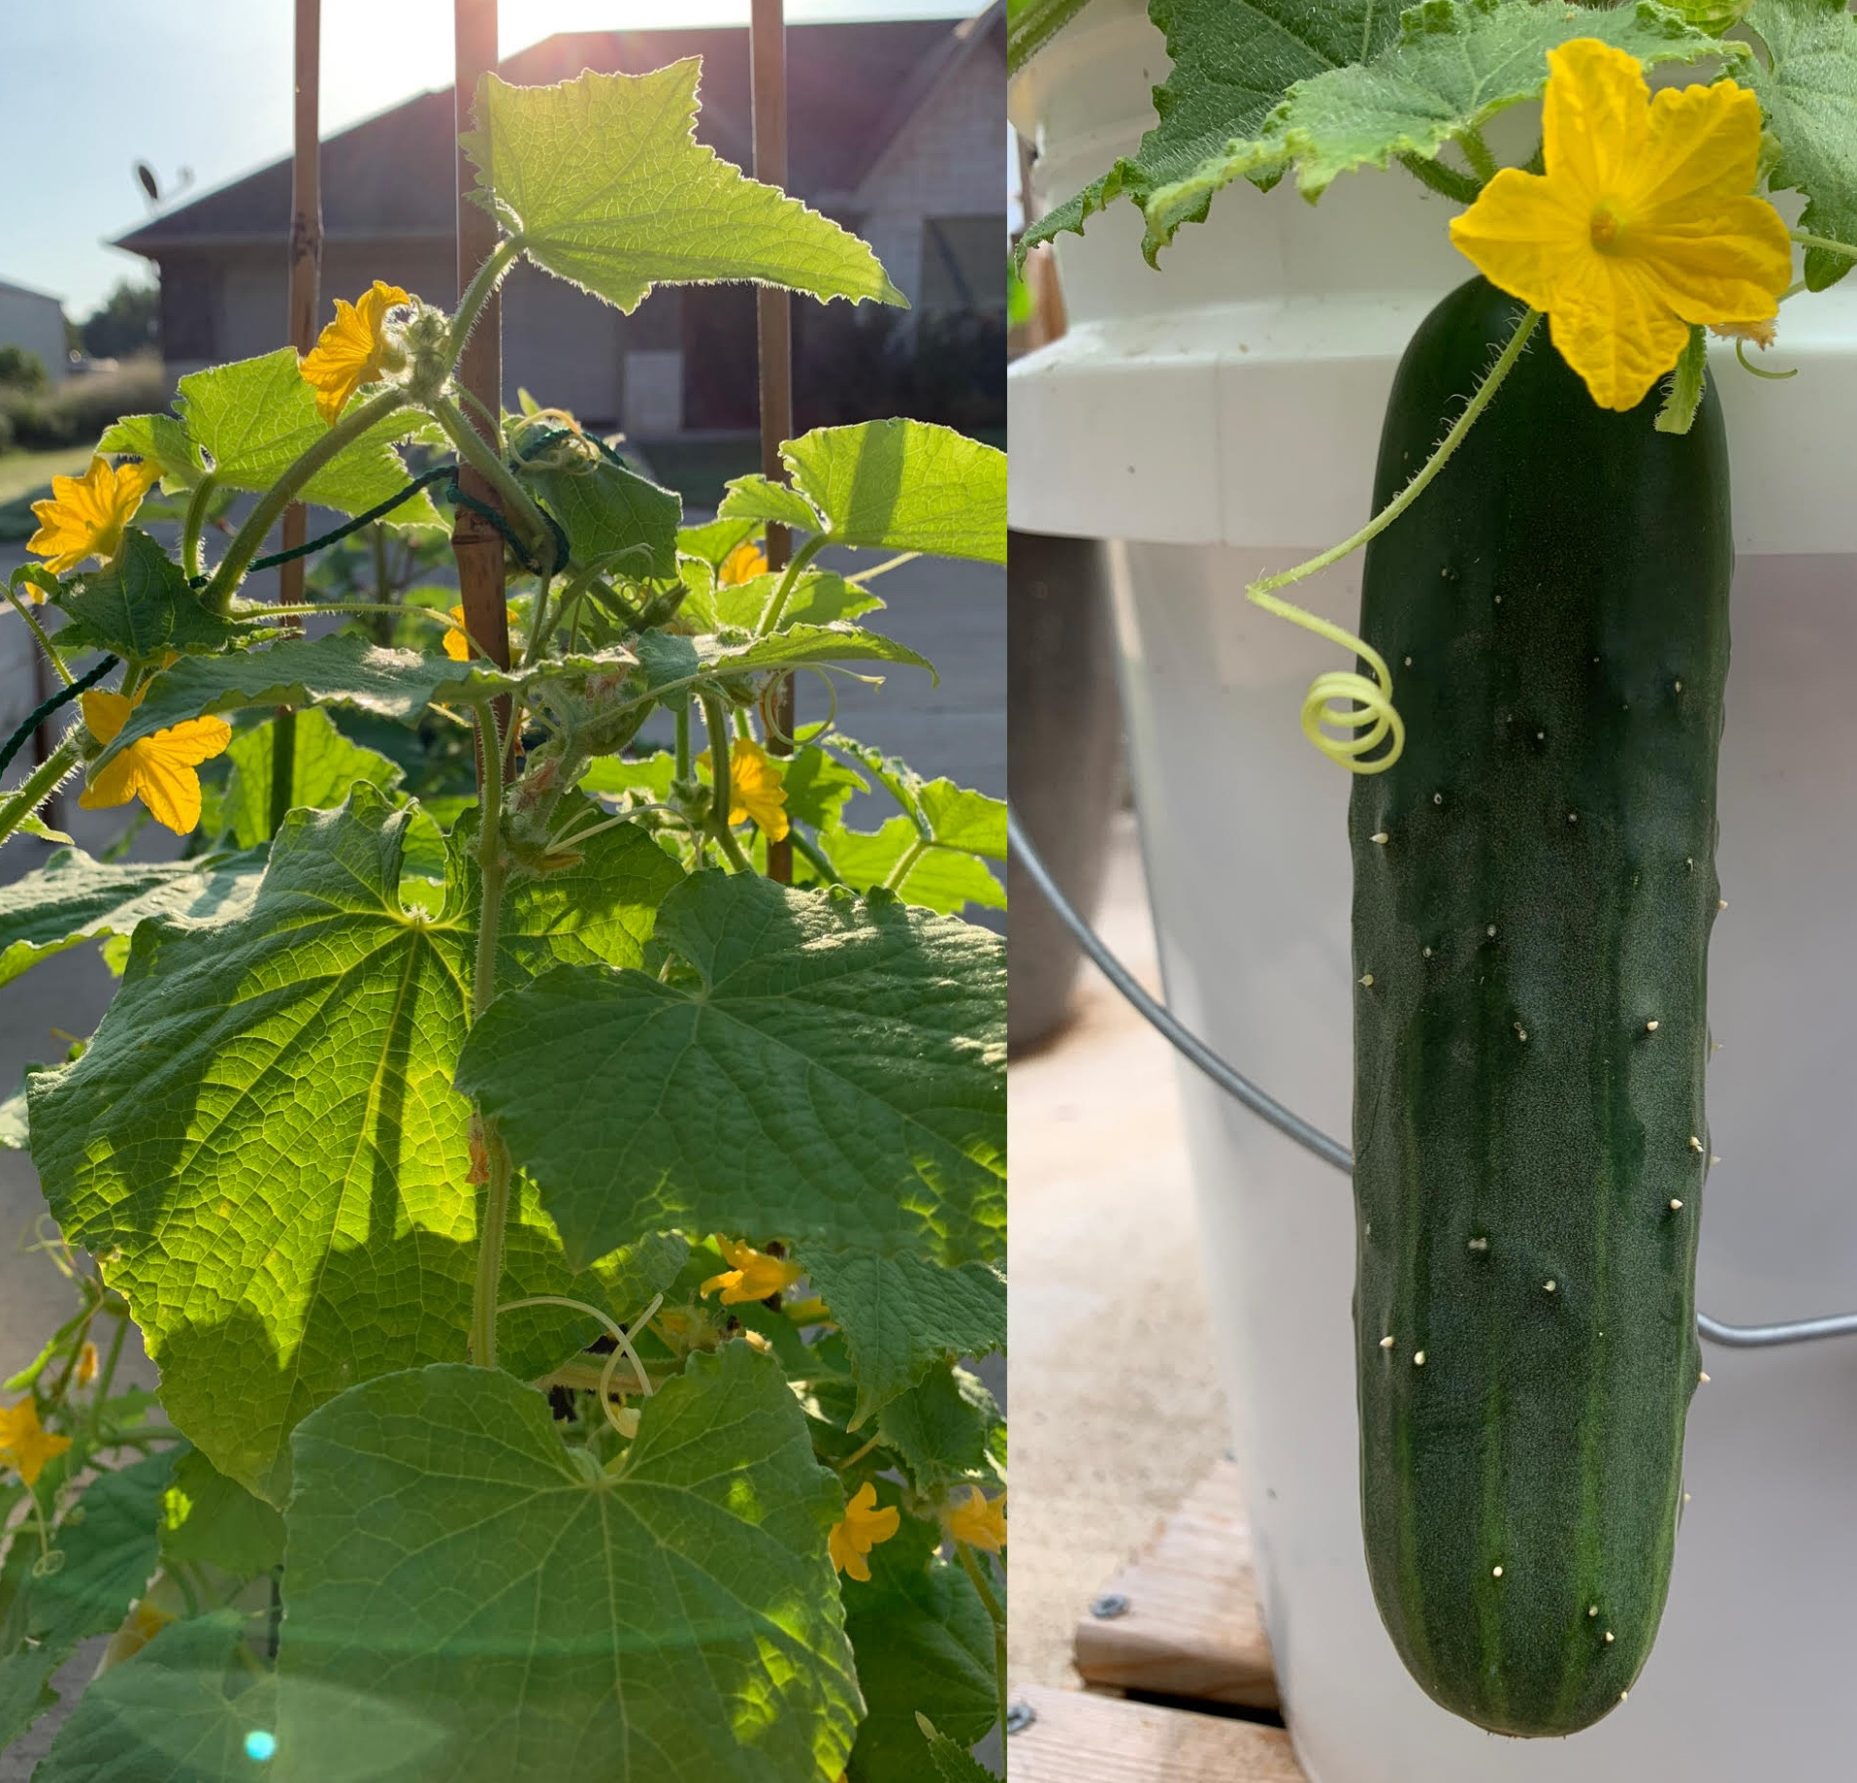 How to Grow the Best Container Garden Cucumbers - Okra In My Garden